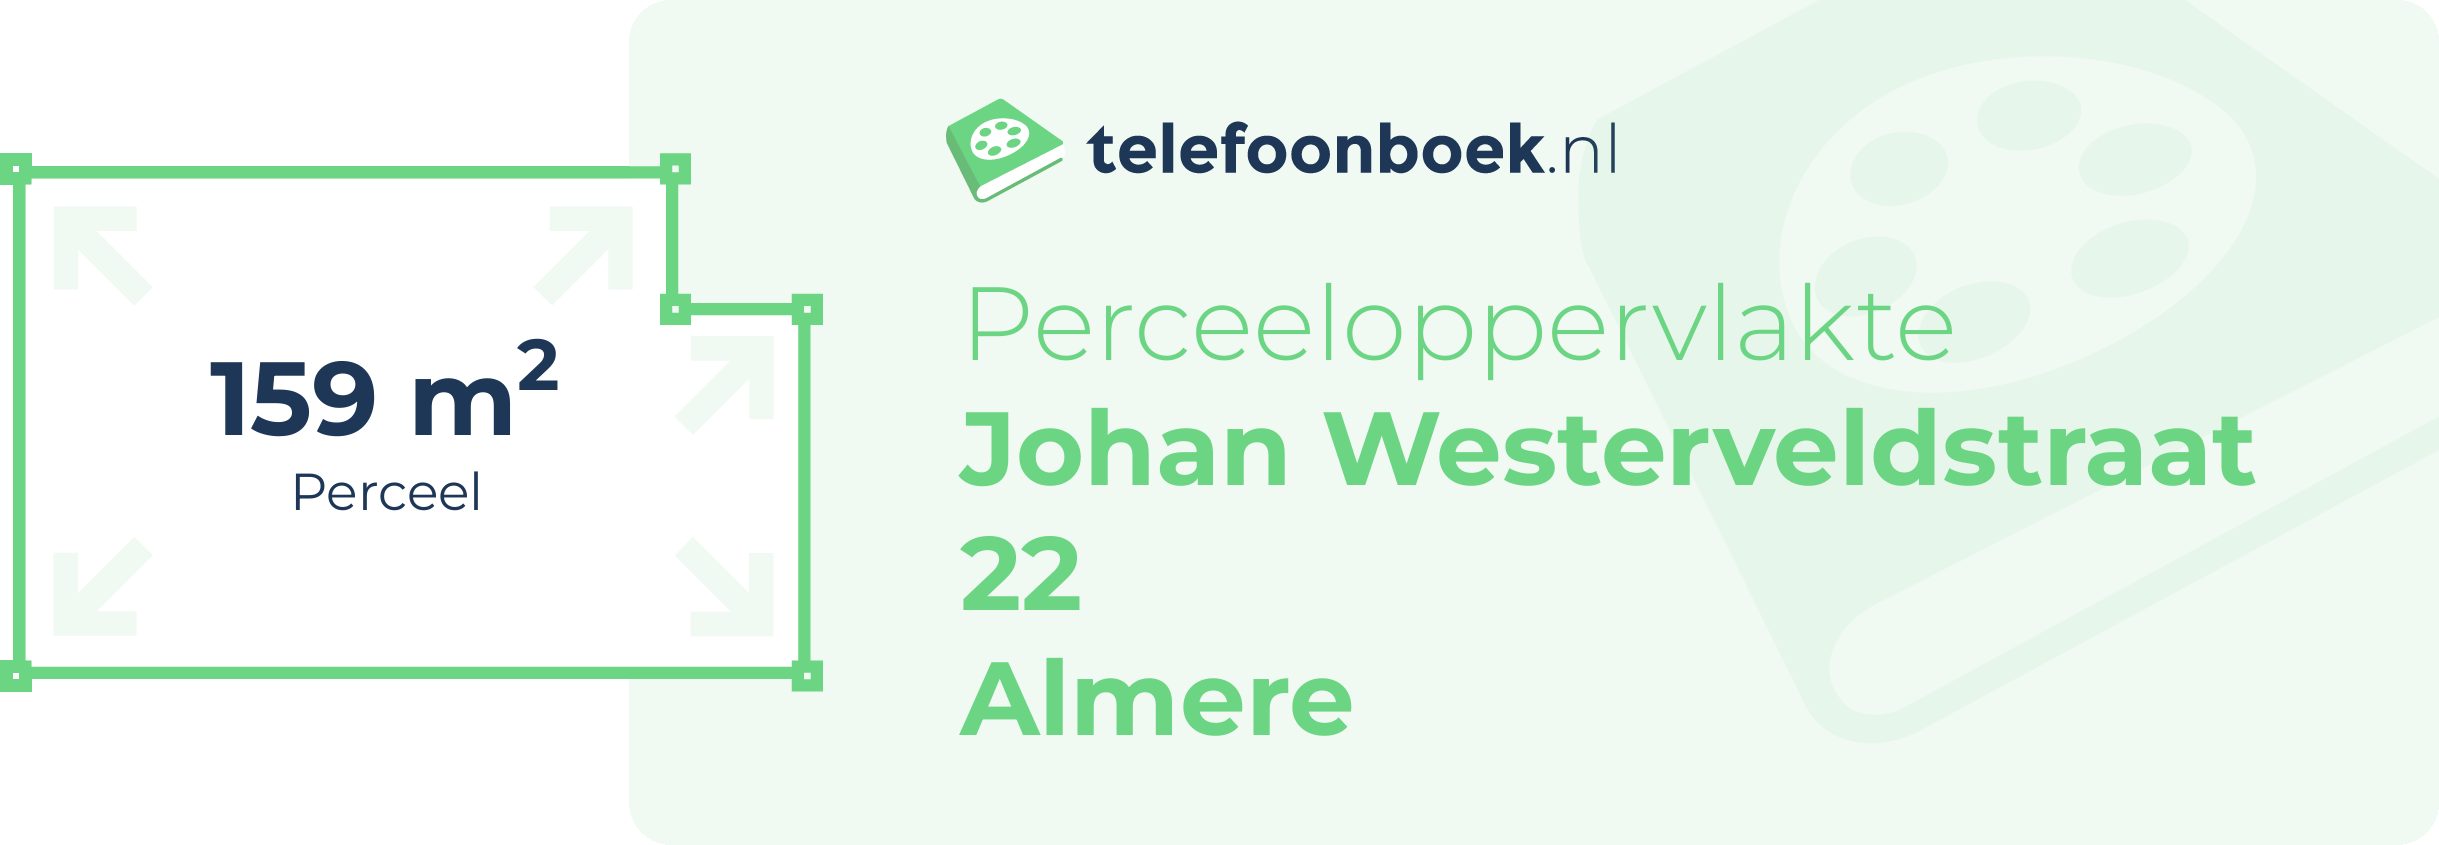 Perceeloppervlakte Johan Westerveldstraat 22 Almere